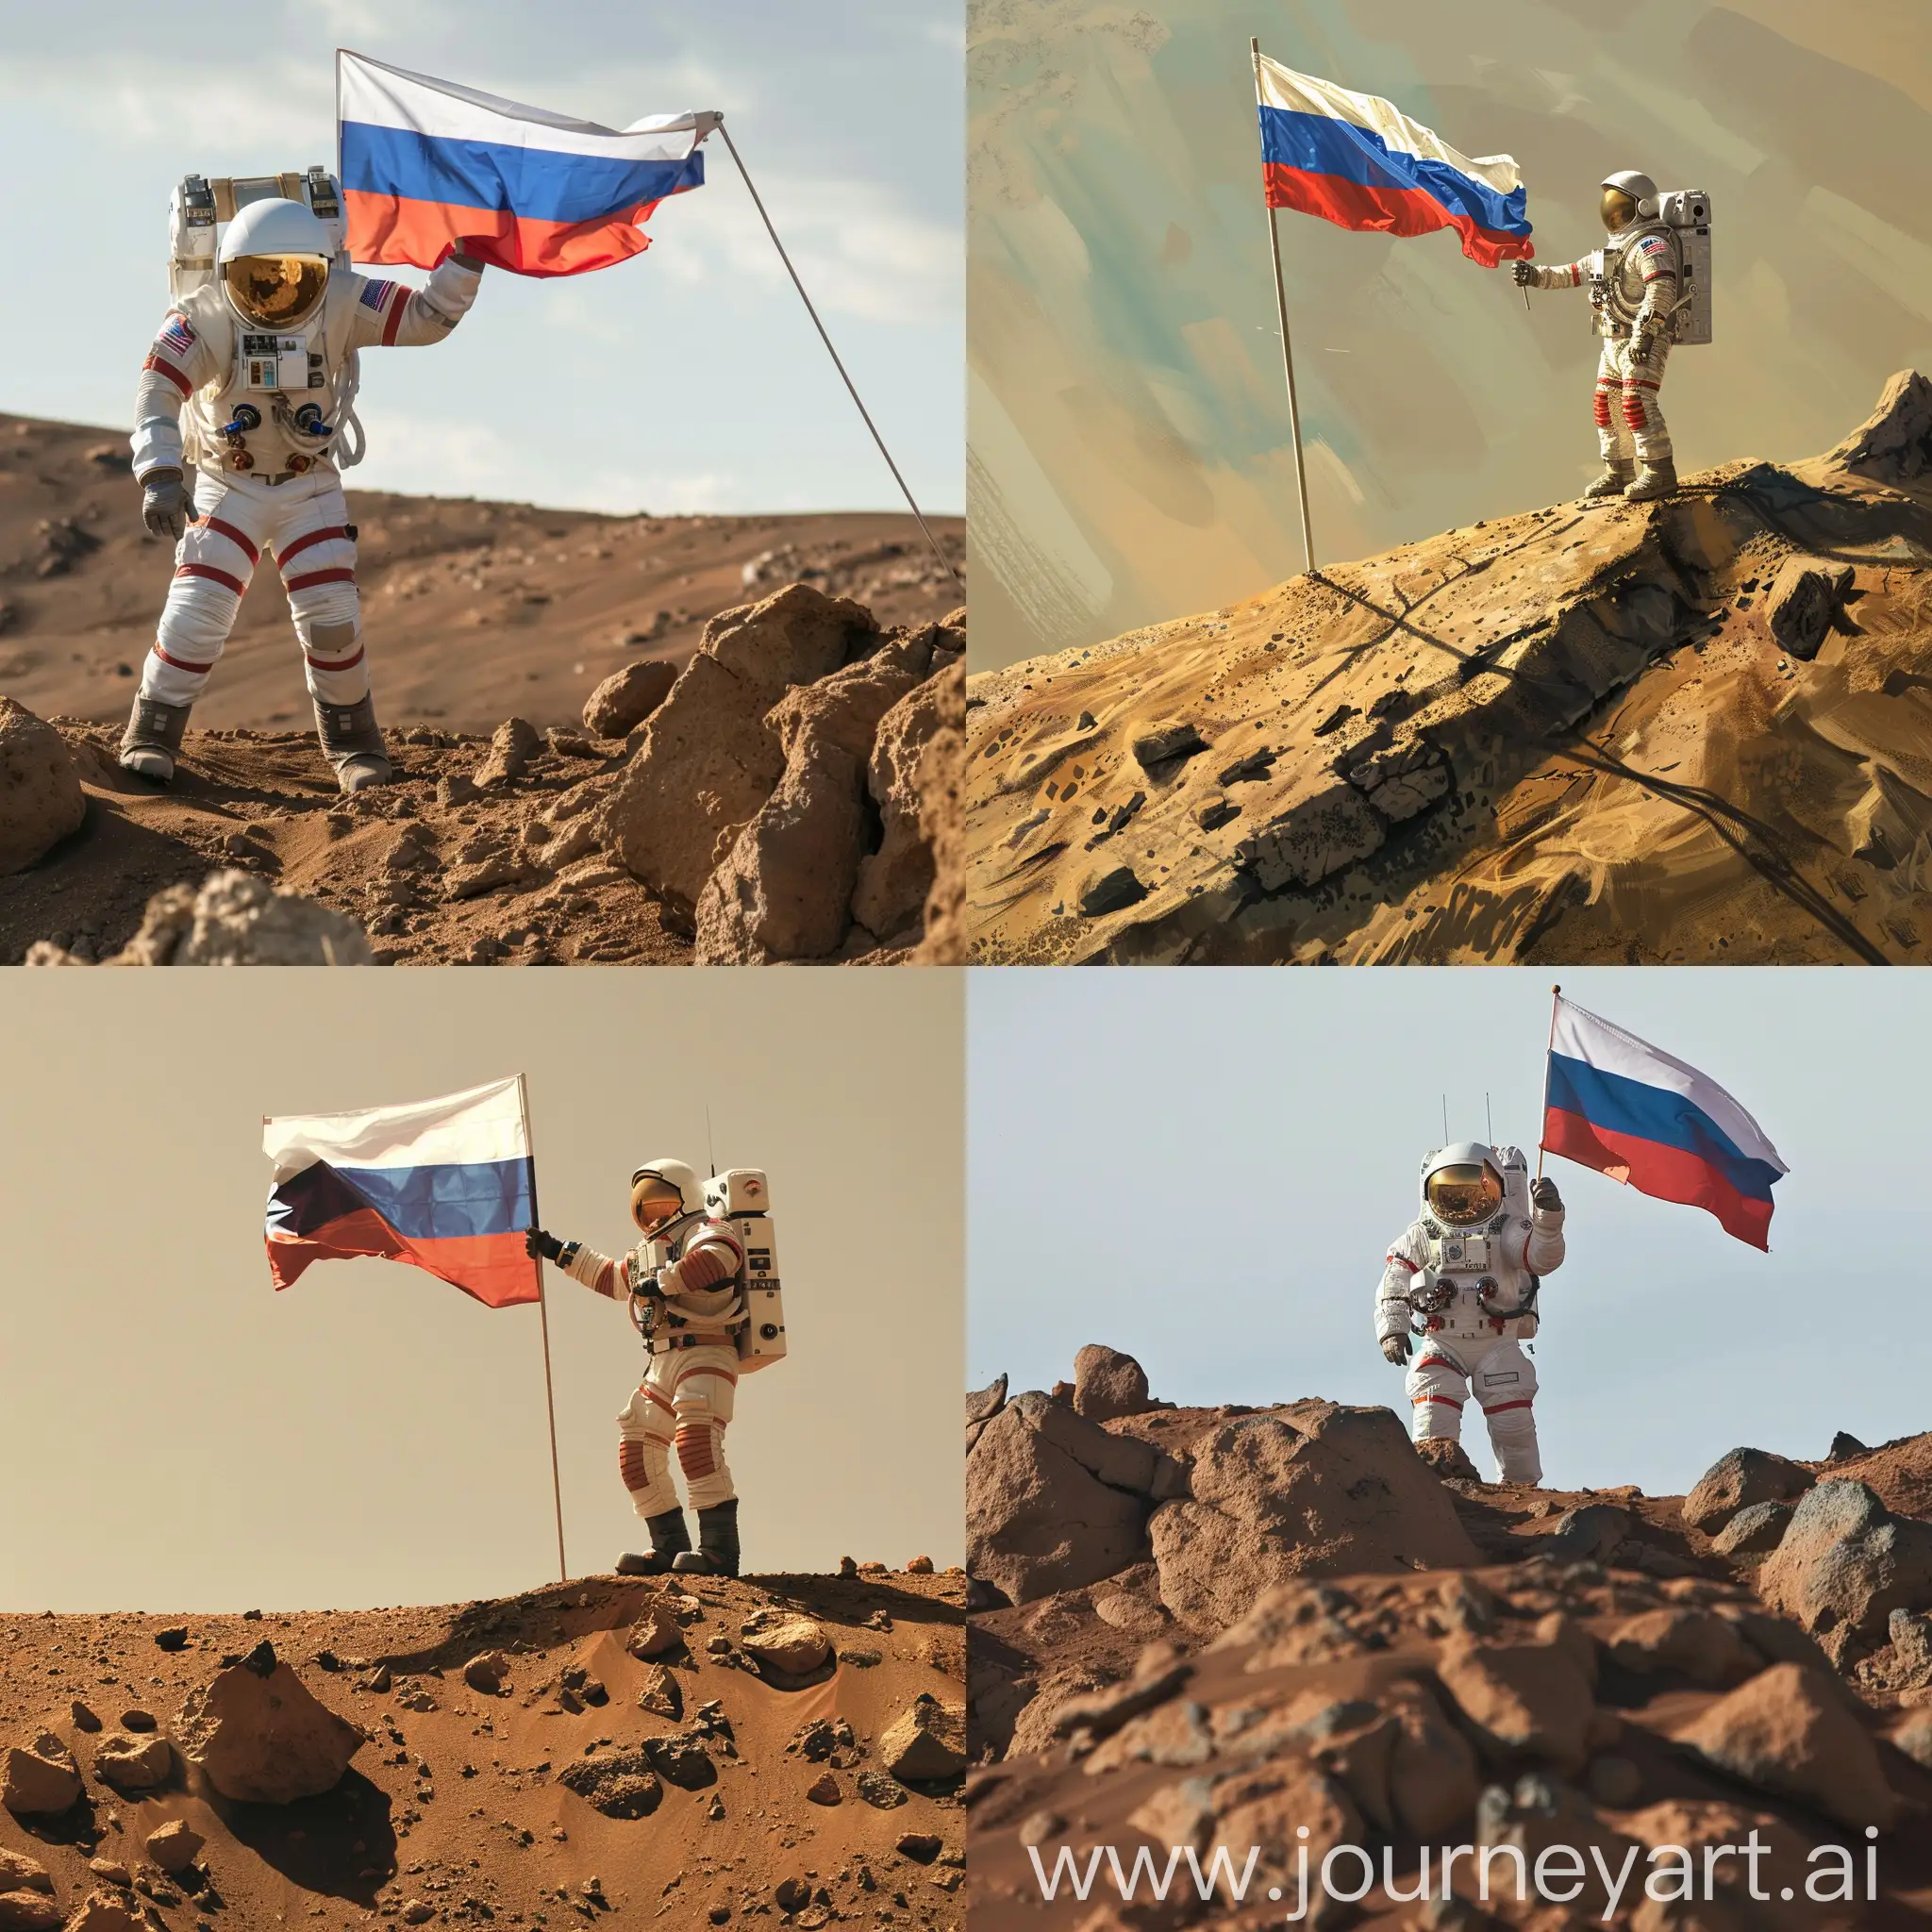 Русский космонавт на марсе, высадка, радость, ставит флаг России